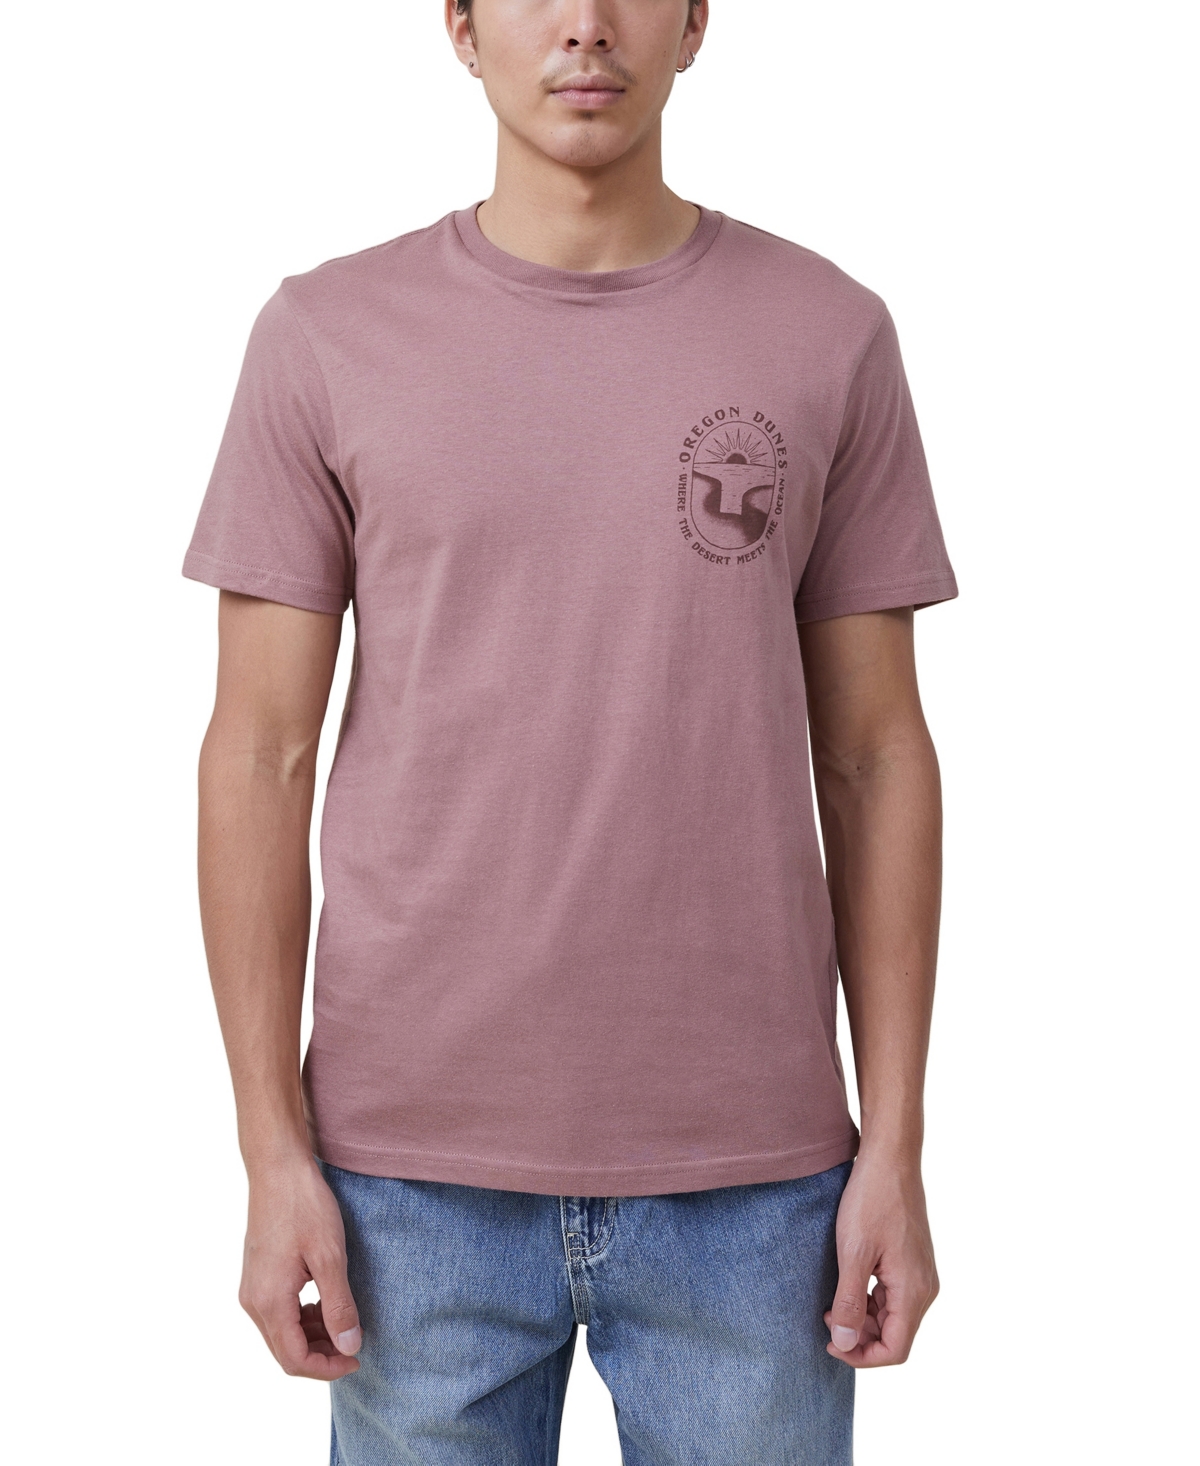 Cotton On Men's Tbar Art Crew Neck T-shirt